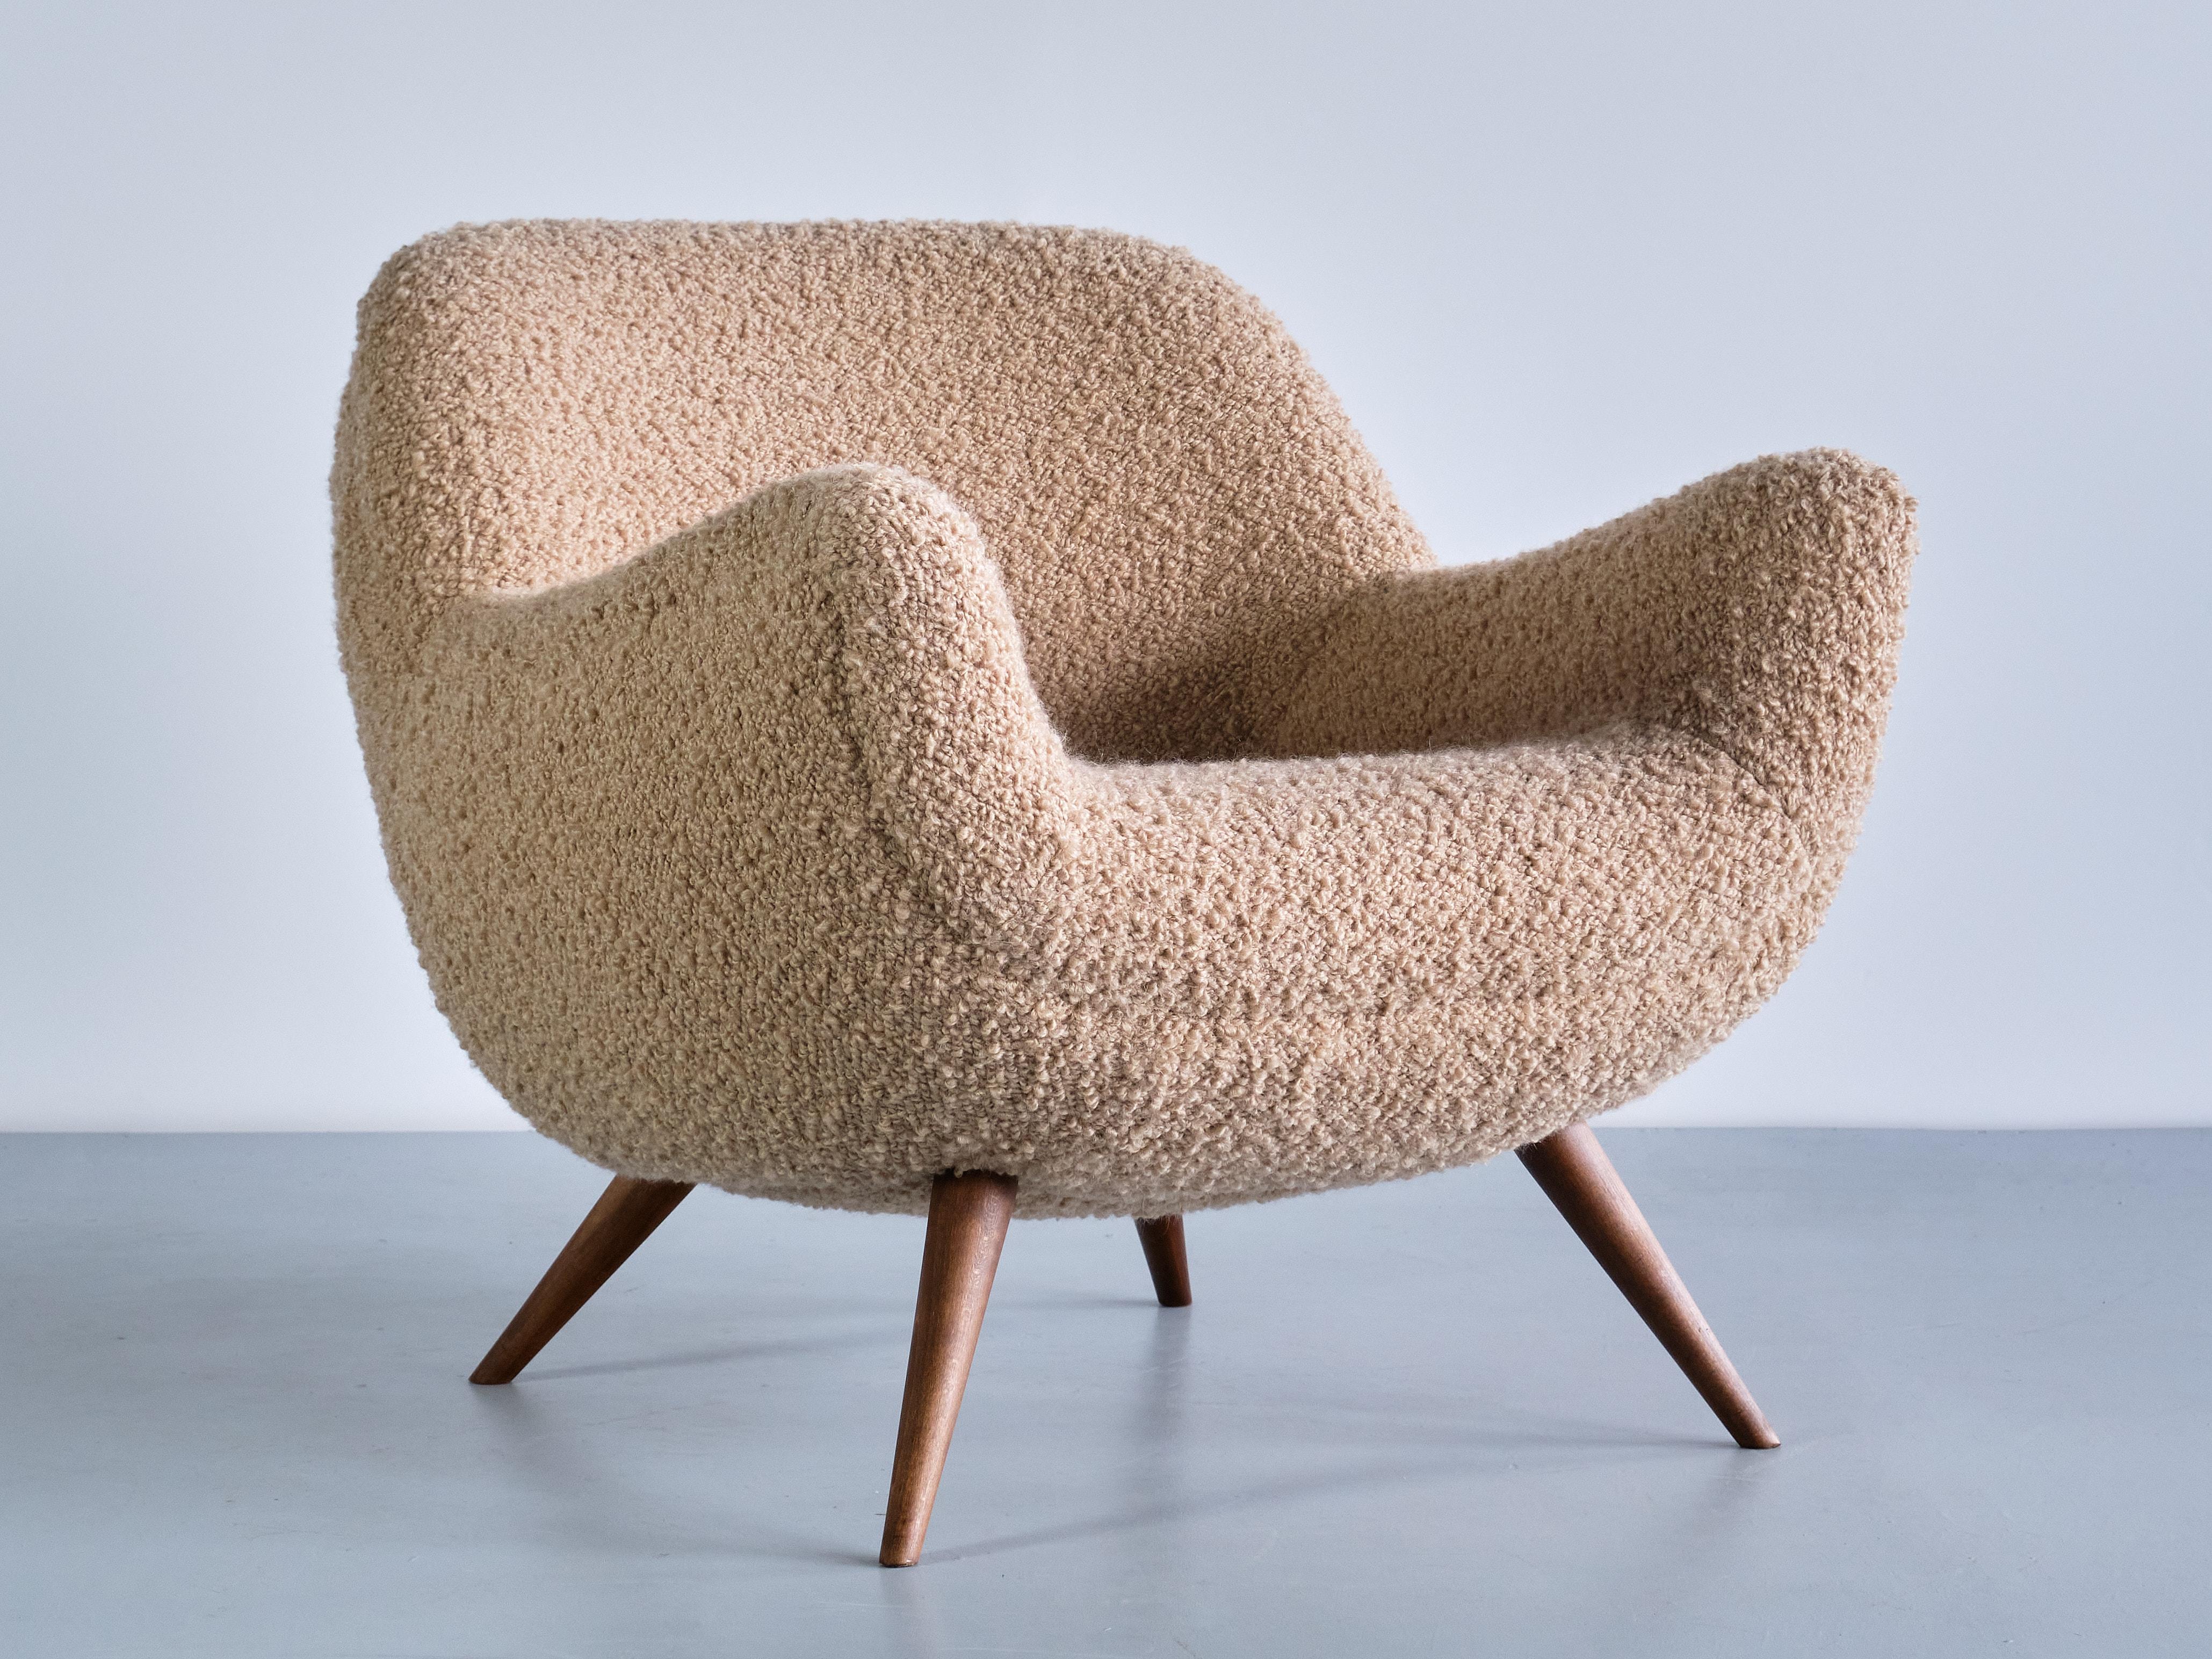 Dieser äußerst seltene Sessel wurde von Gustav Bergmann entworfen und von seiner Firma in Lippe in den frühen 1960er Jahren hergestellt. Die organischen und runden Linien des Designs verleihen dem Stuhl ein markantes und einladendes Aussehen. Sitz